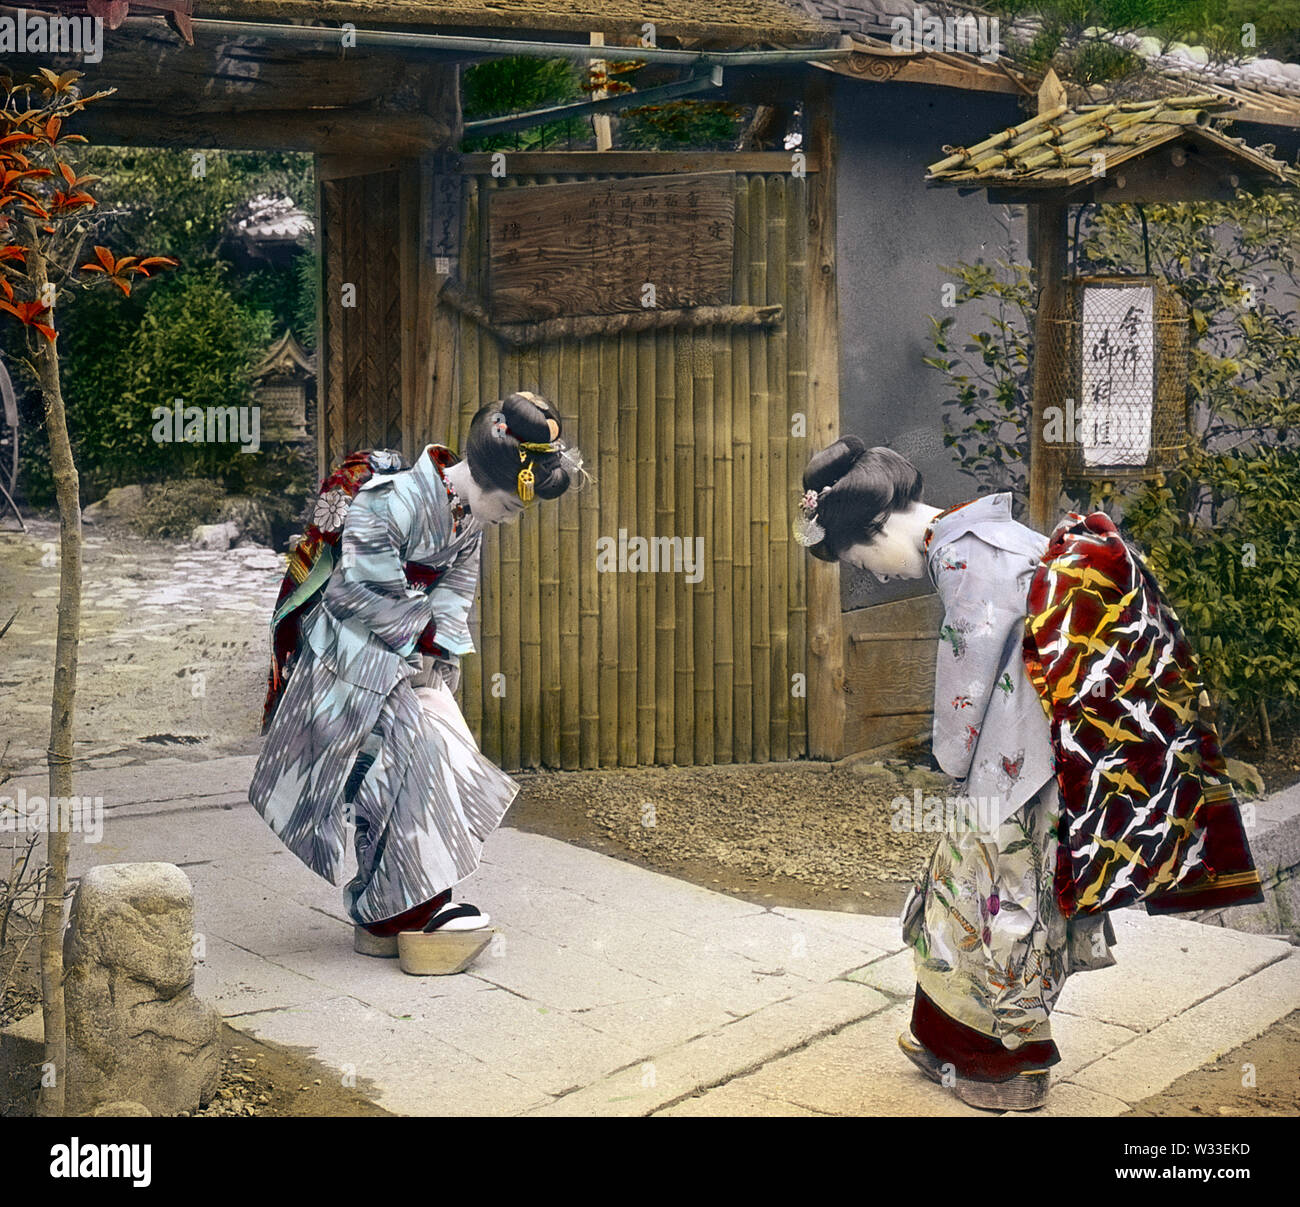 [1890s Japan - Japanische Frauen Gruß] - Zwei Frauen tragen Kimonos, Geta und traditionellen Frisuren bug Miteinander an der Pforte zu Genkyu-en Gärten in Manza, Präfektur Shiga. 19 Vintage Glas schieben. Stockfoto